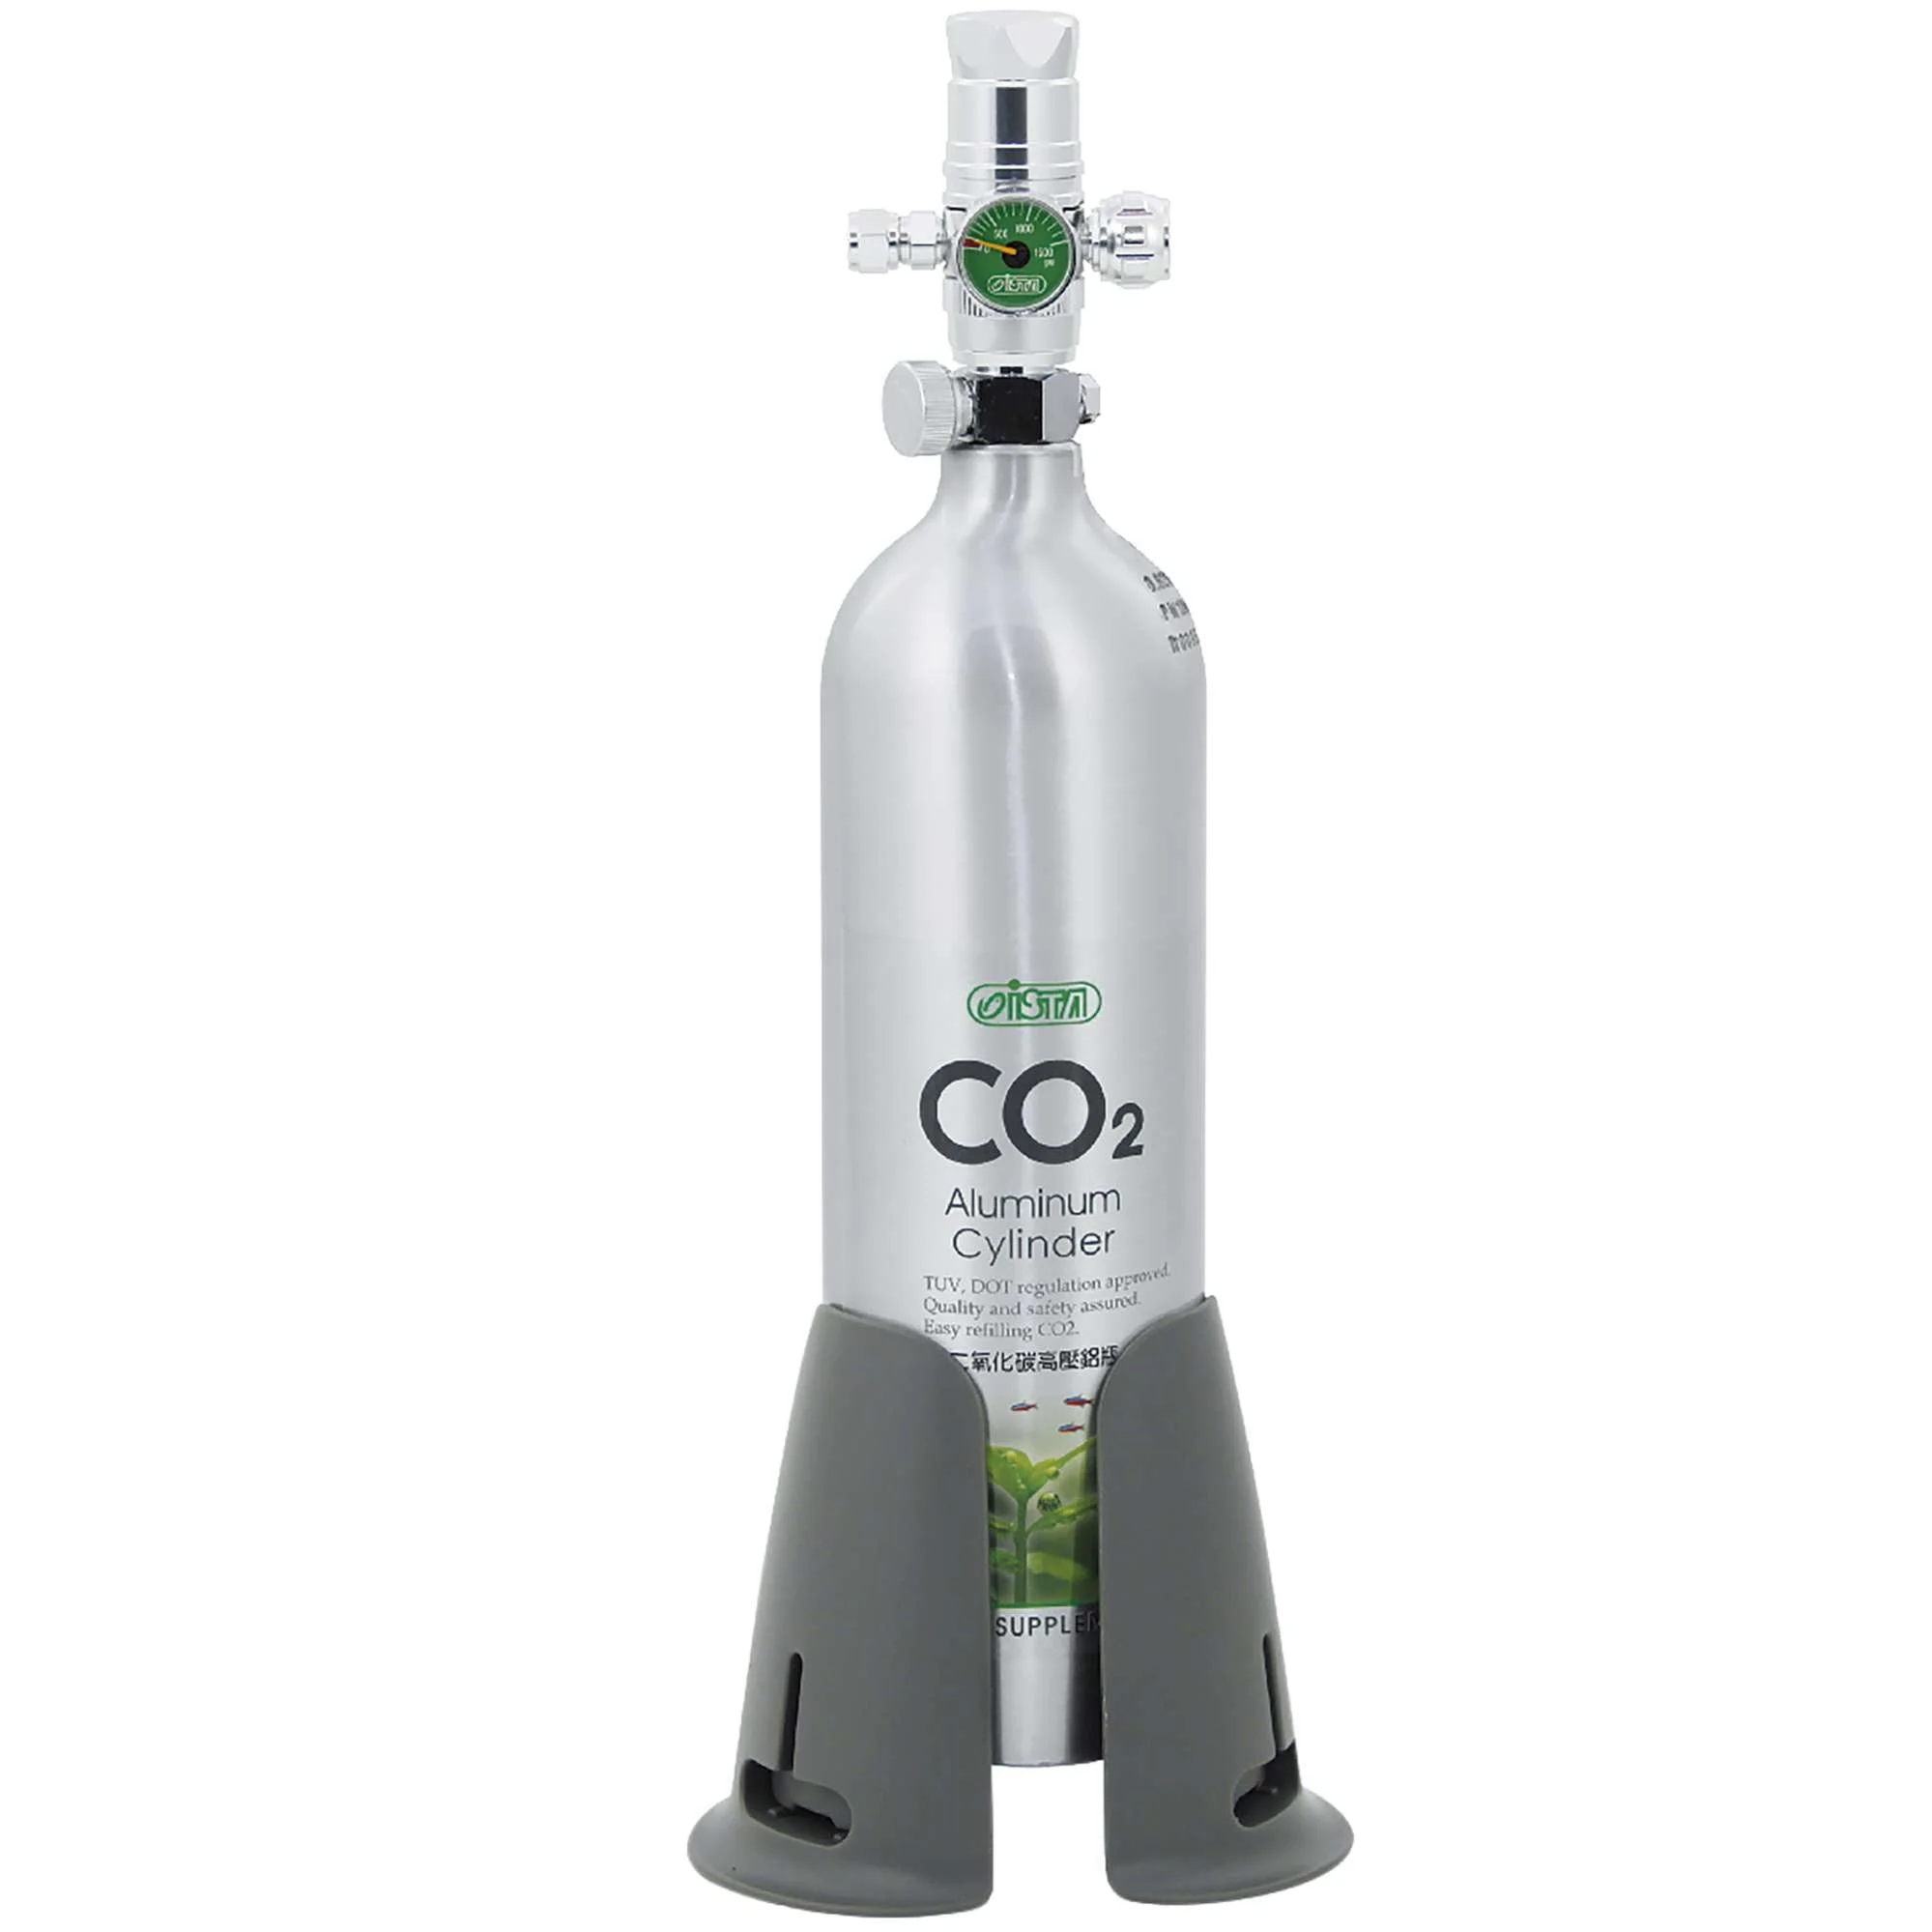 Botella de CO2 PezVerde 1L Aluminio